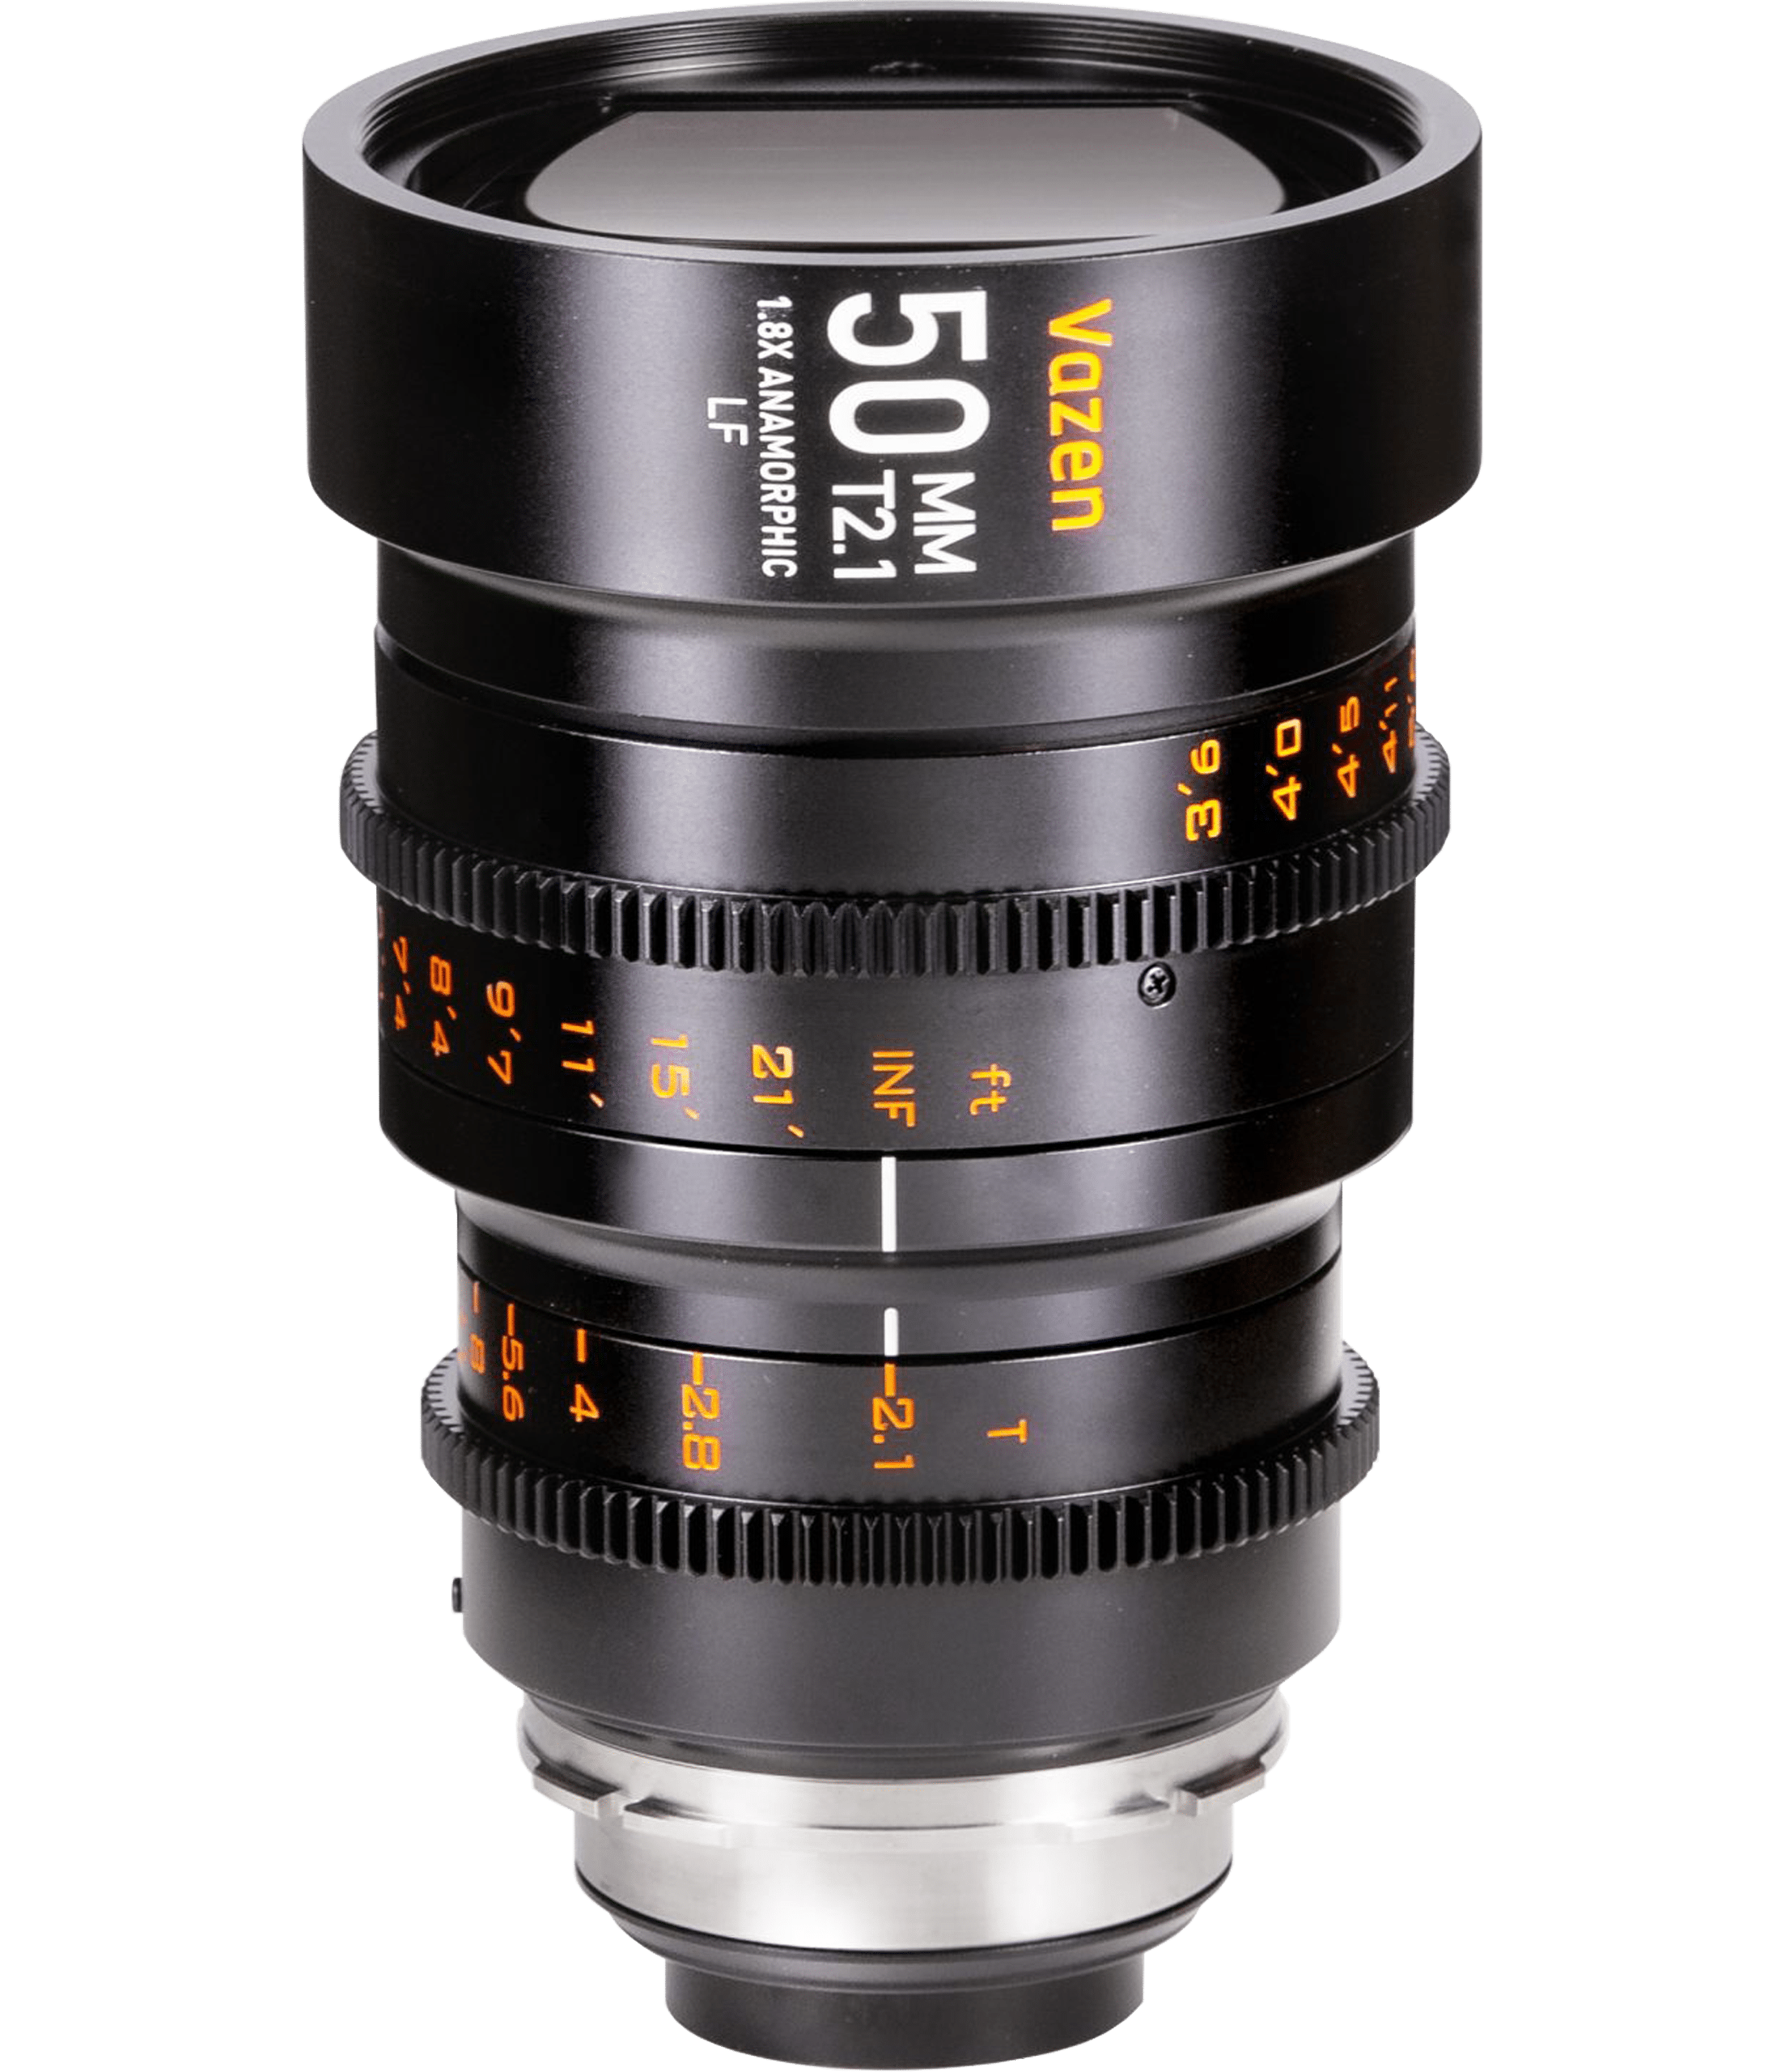 Vazen 50mm T/2.1 1.8X Anamorphic Lens for PL/EF Full Frame Camera